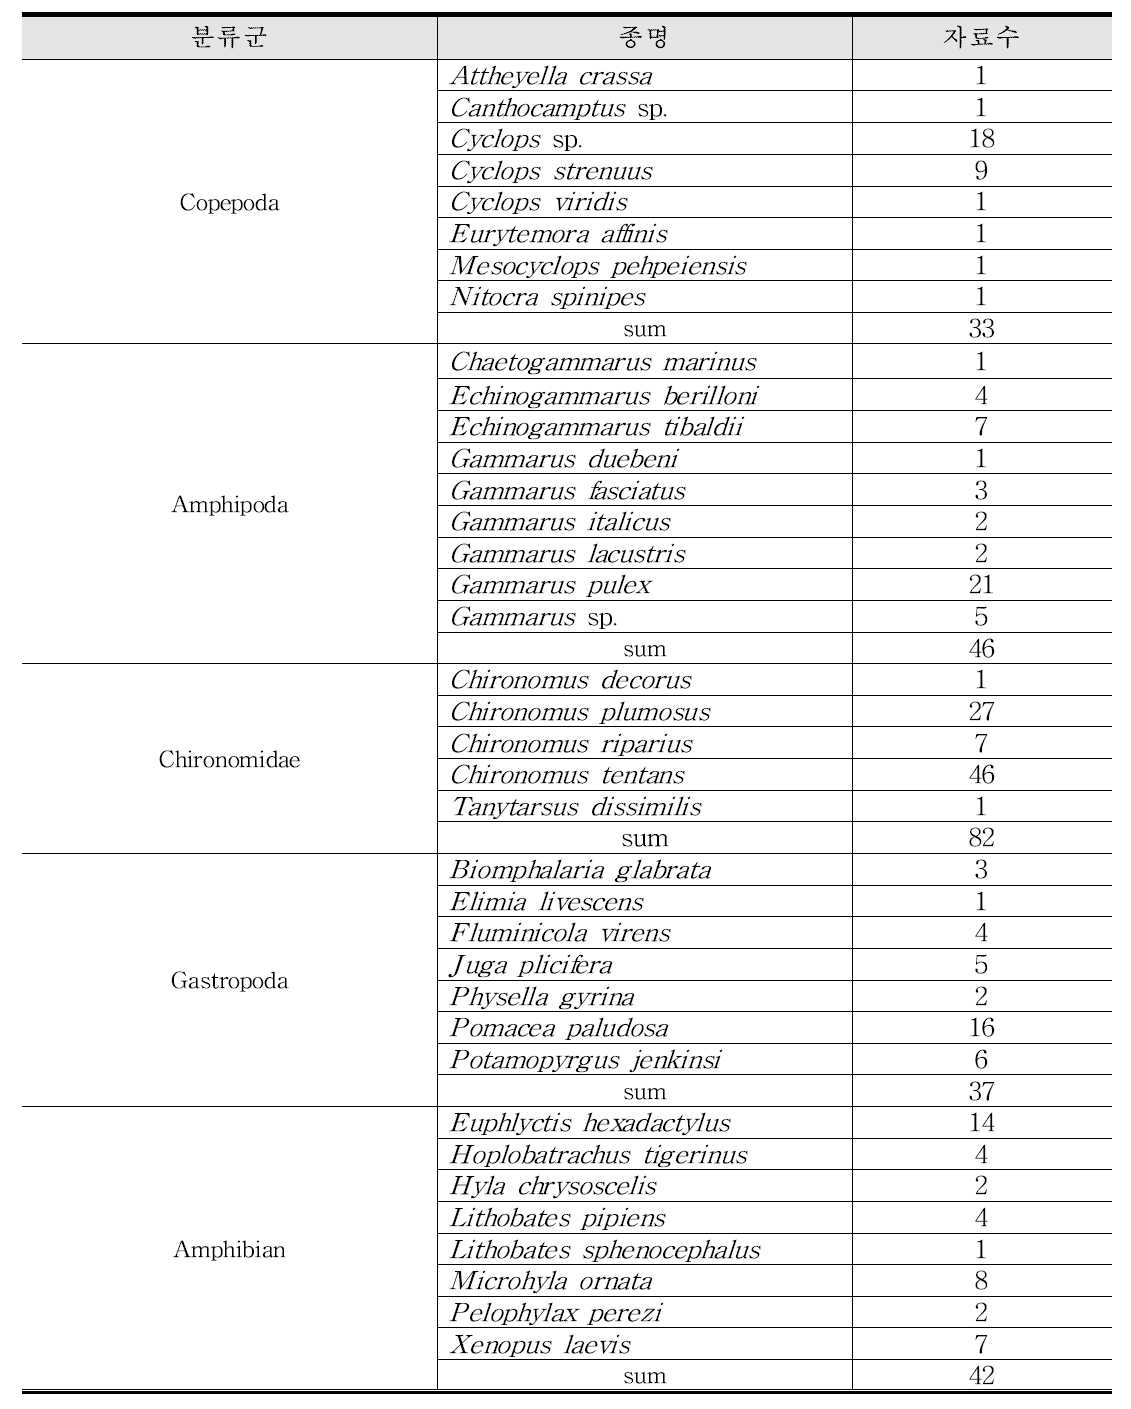 5 개 분류군 (요각류, 단각류, 깔따구류, 복족류, 양서류)의 Cu 민감도 비교를 위한 국외 생태독성 자료수 현황